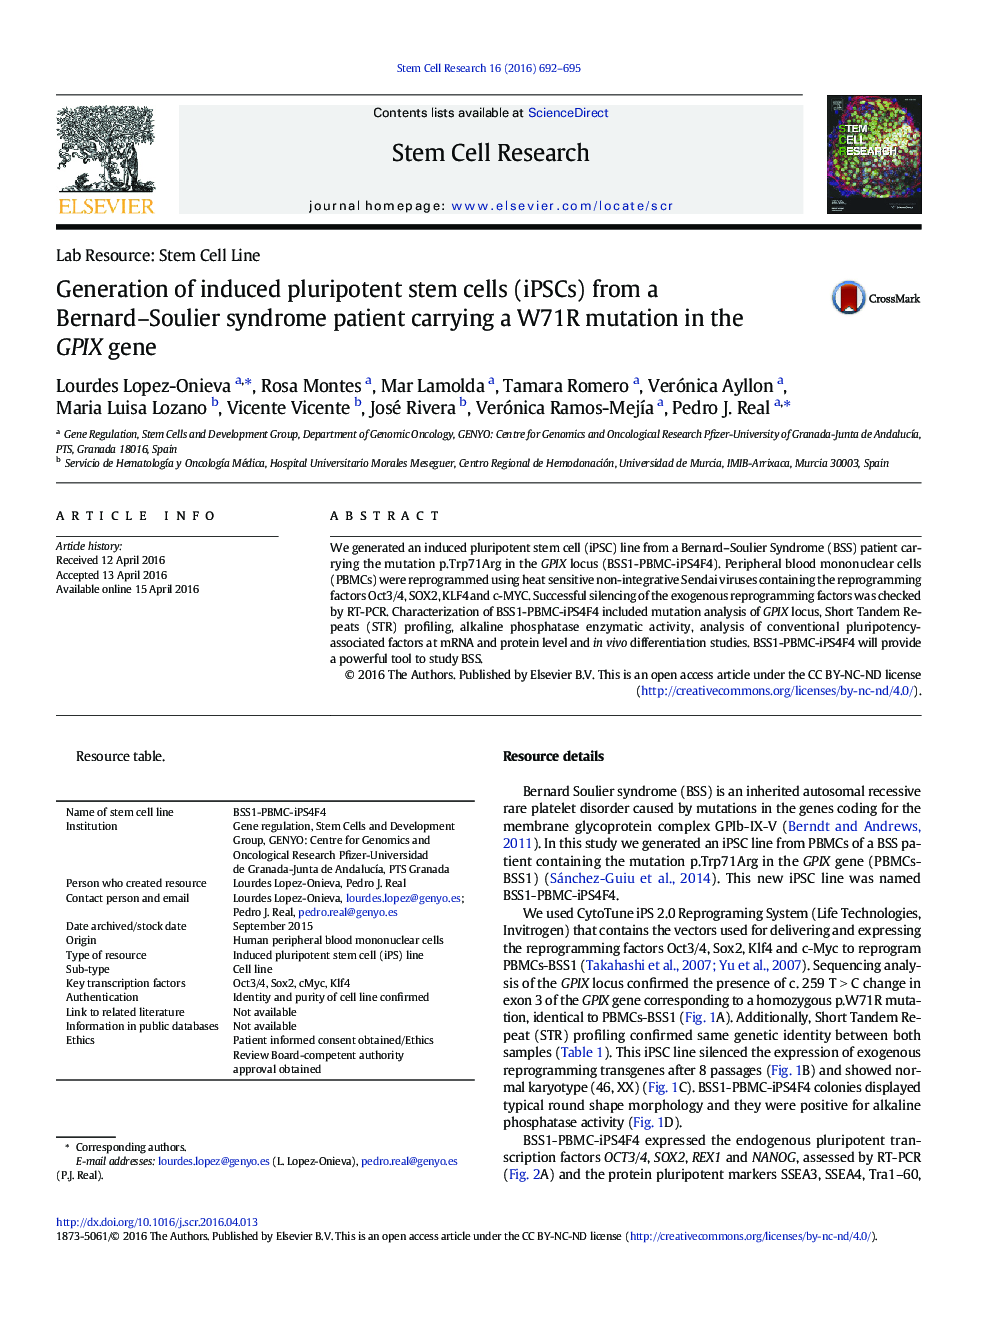 تولید سلول های بنیادی pluripotent القایی (iPSCs) از بیمار مبتلا به سندرم برنارد ـ سولیر که جهش W71R را در ژن GPIX حمل می کند